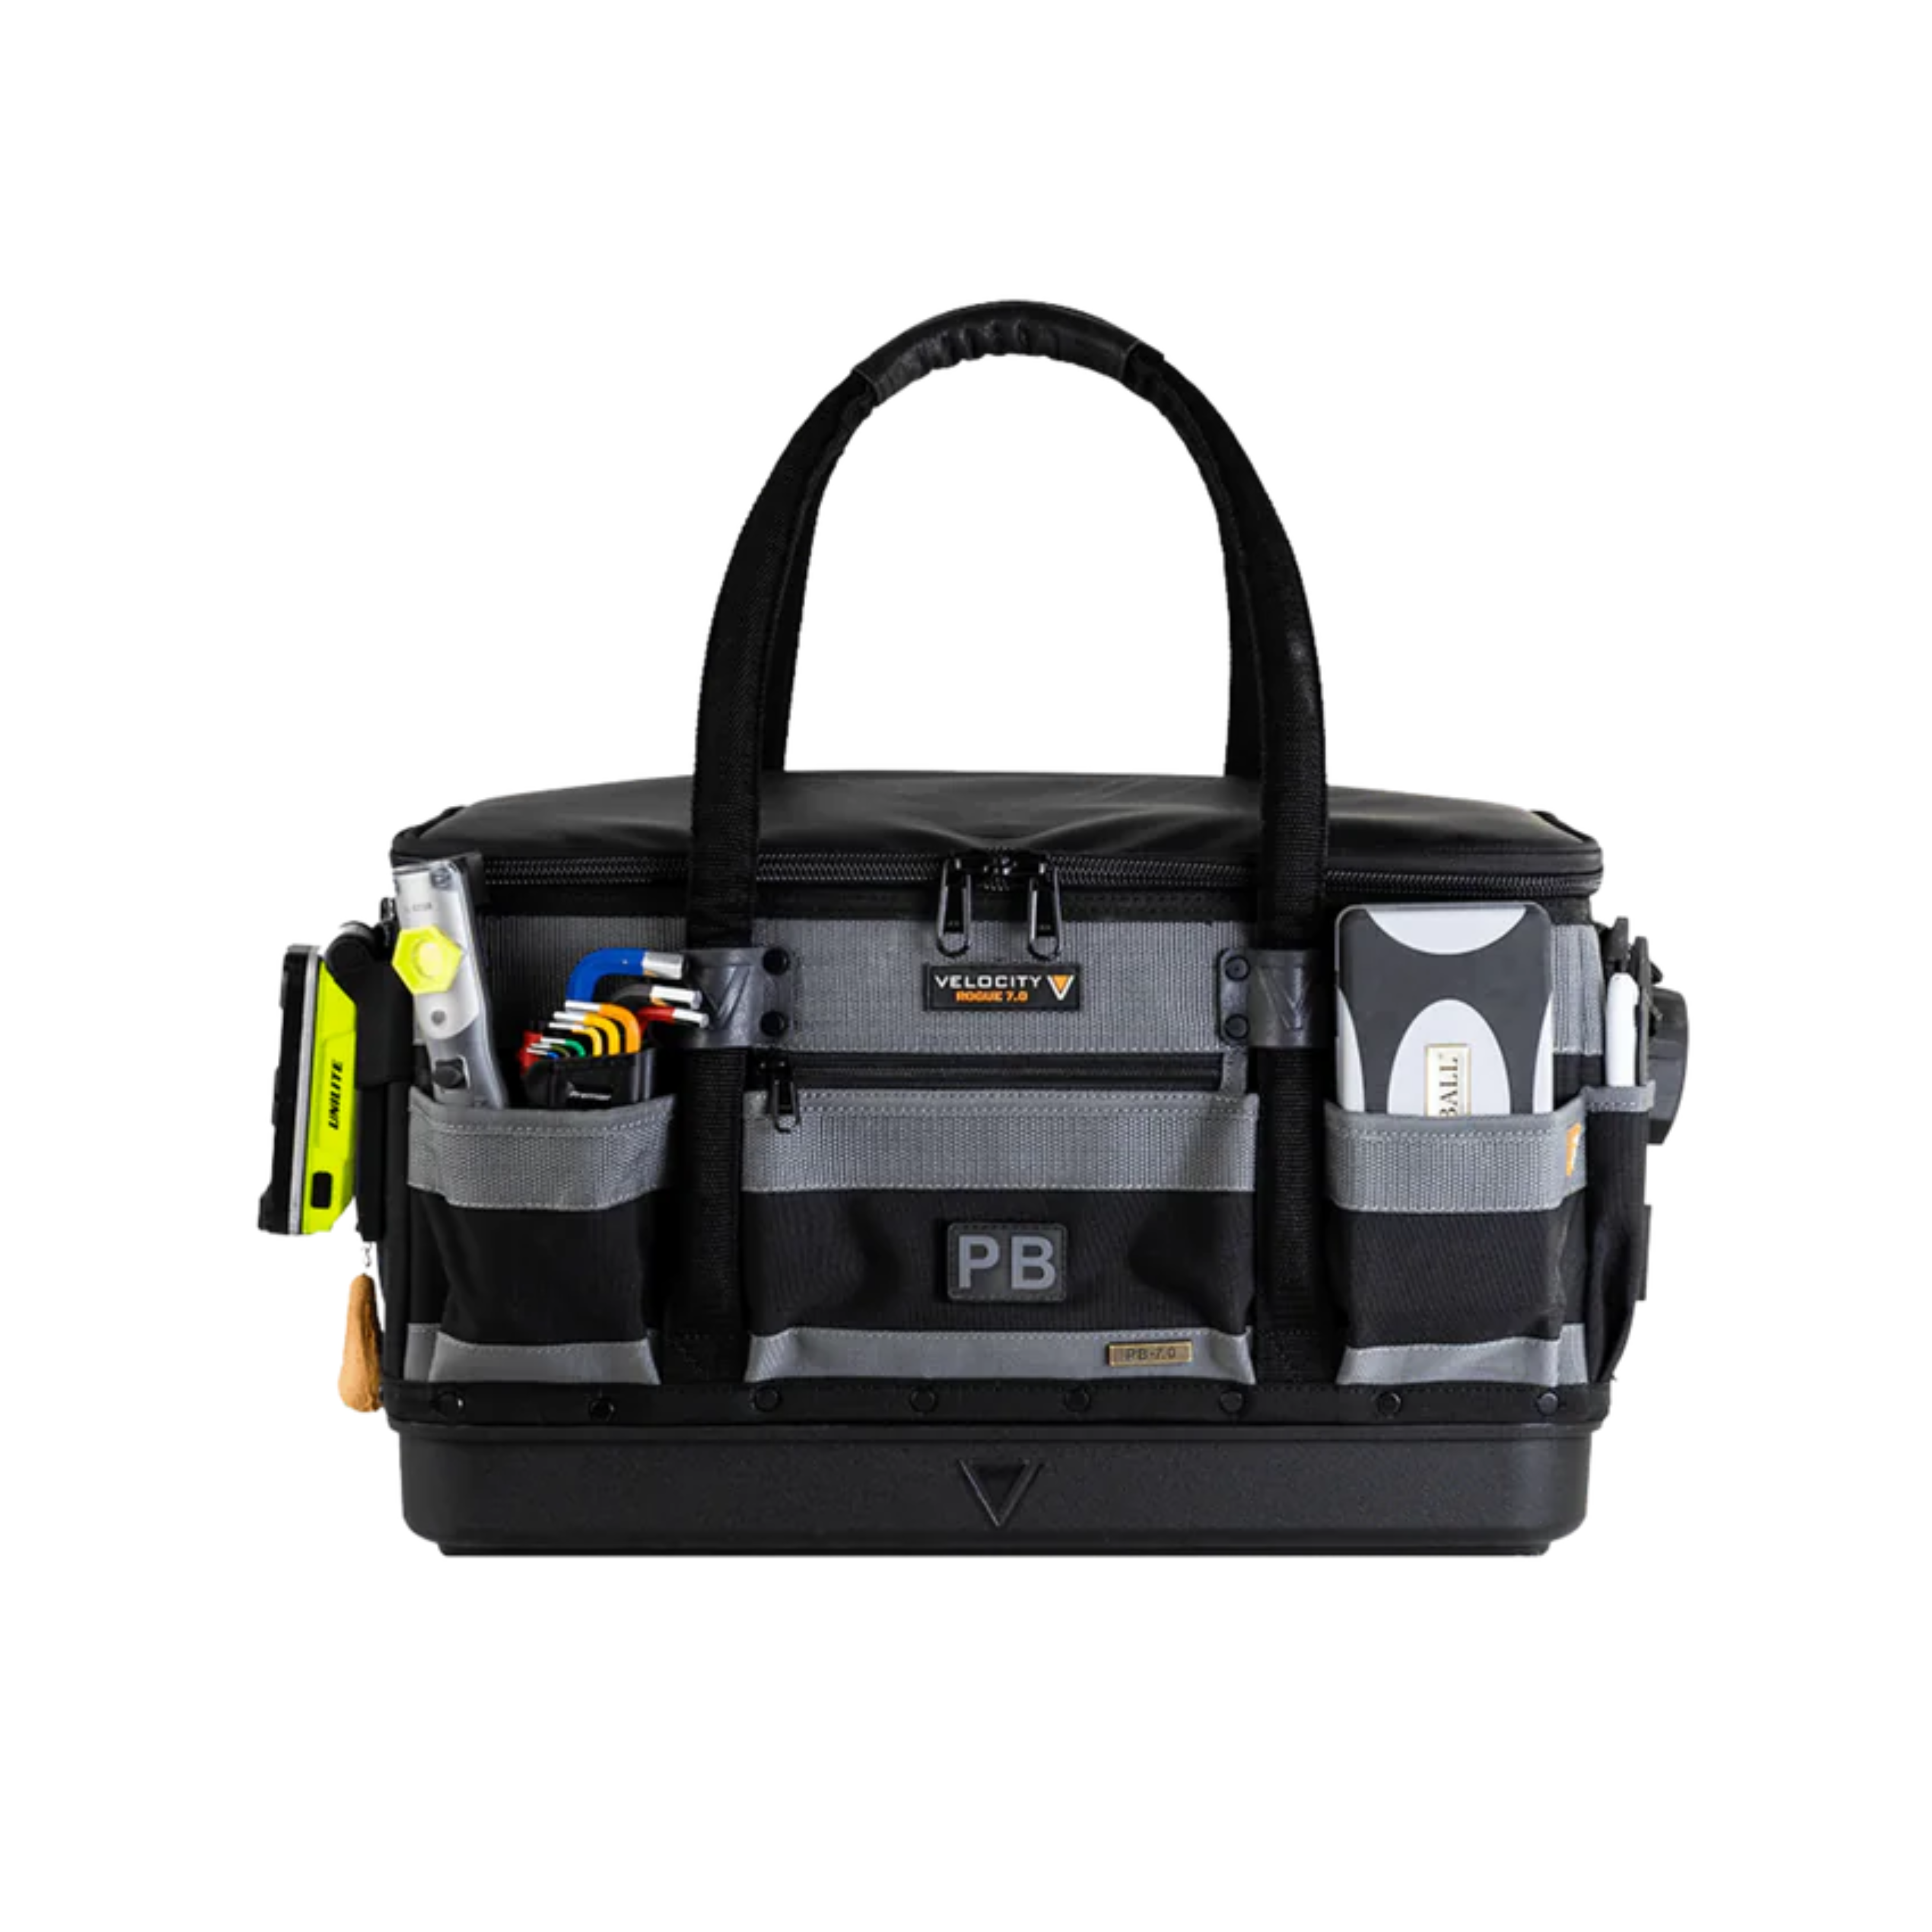 Rogue 7.0 PB Plumber Kit Bag